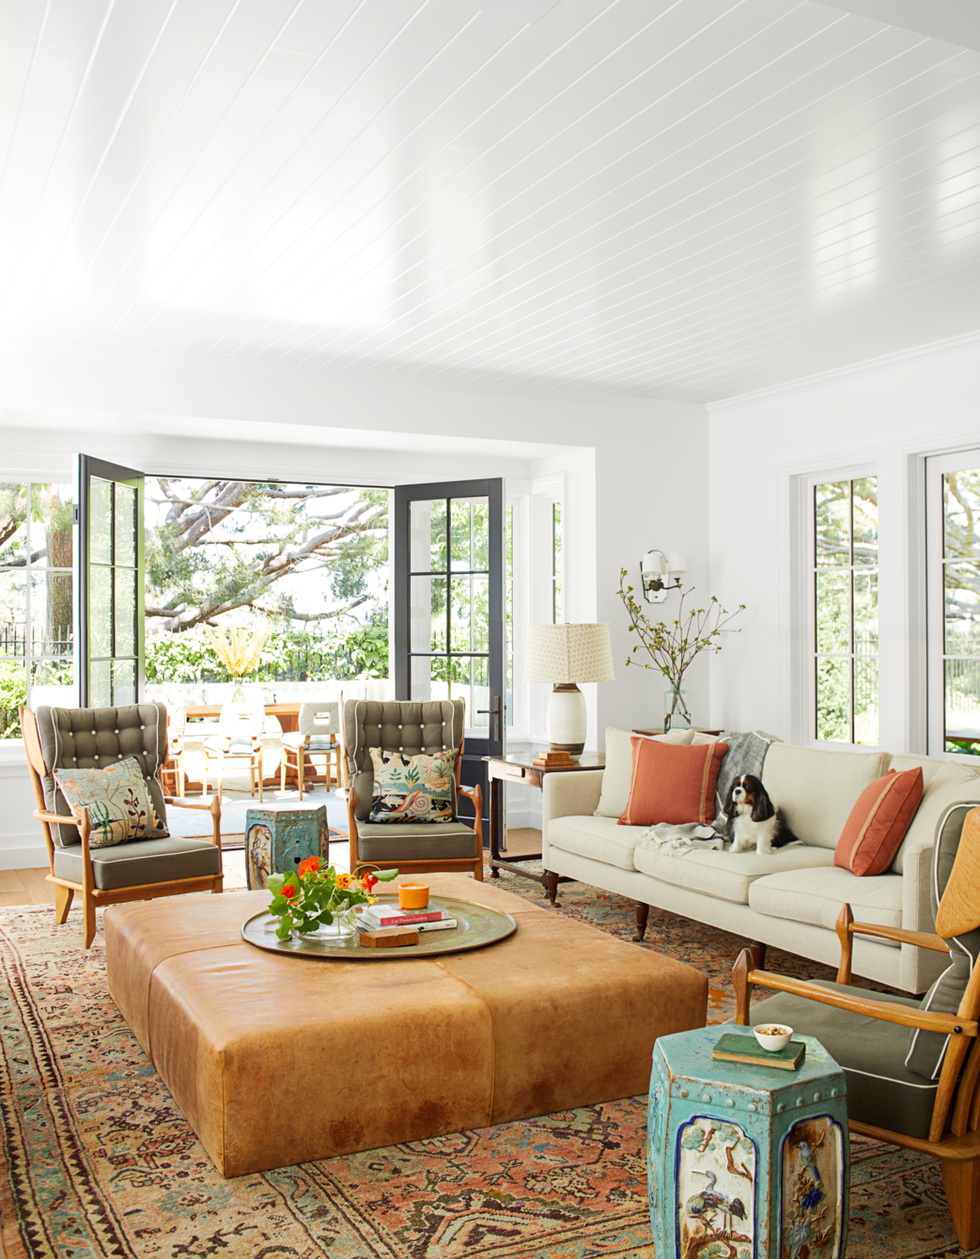 Elegant Home Decor You Should MAKE Instead of Buy